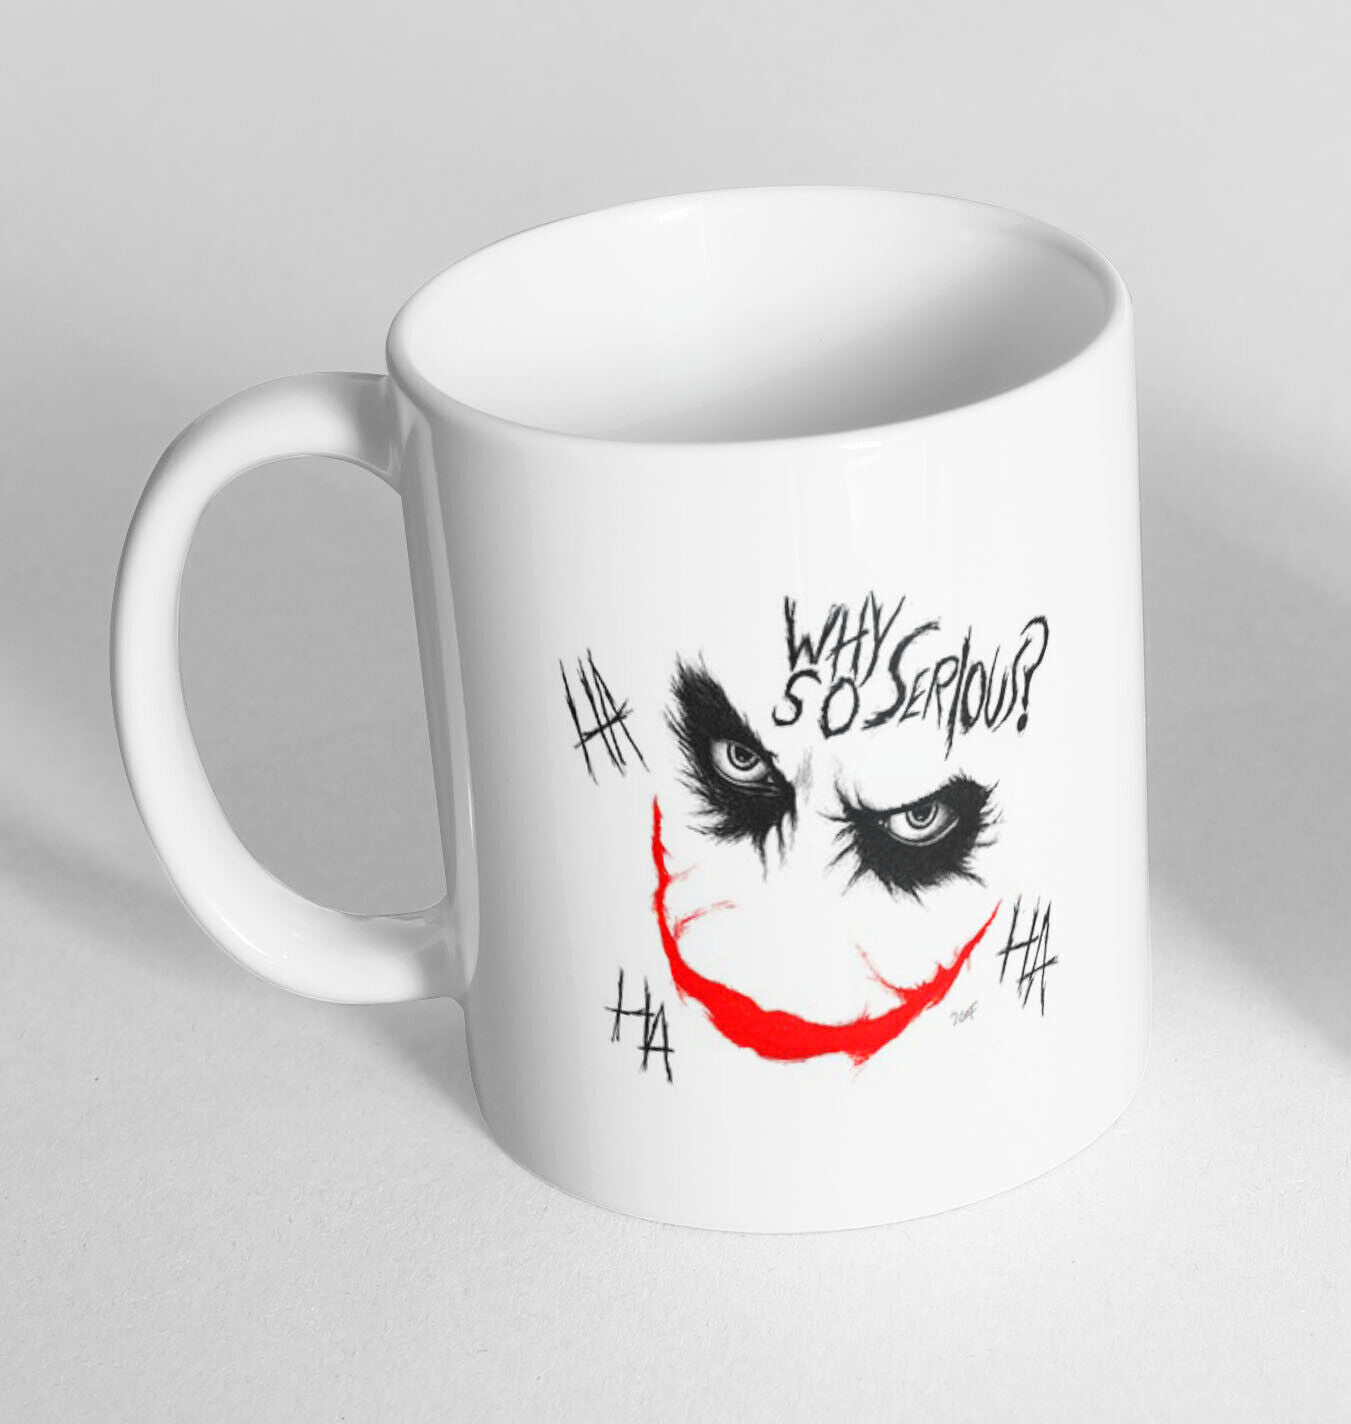 Funny Novelty Ceramic Printed Mug Thermal Mug Gift Coffee Tea 2